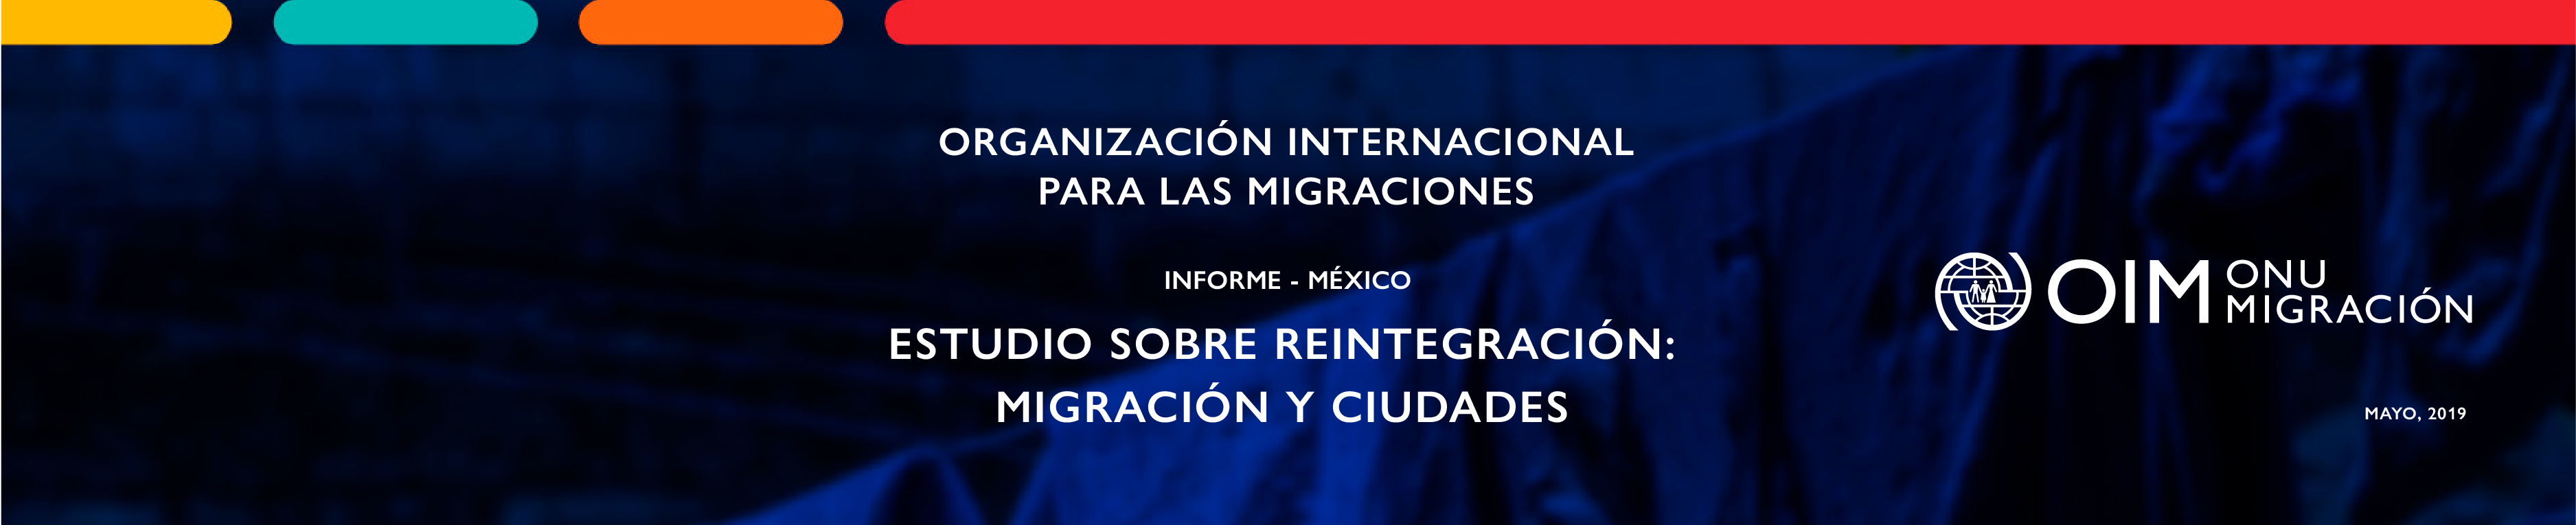 Estudio sobre reintegración: migración y ciudades | Informe México